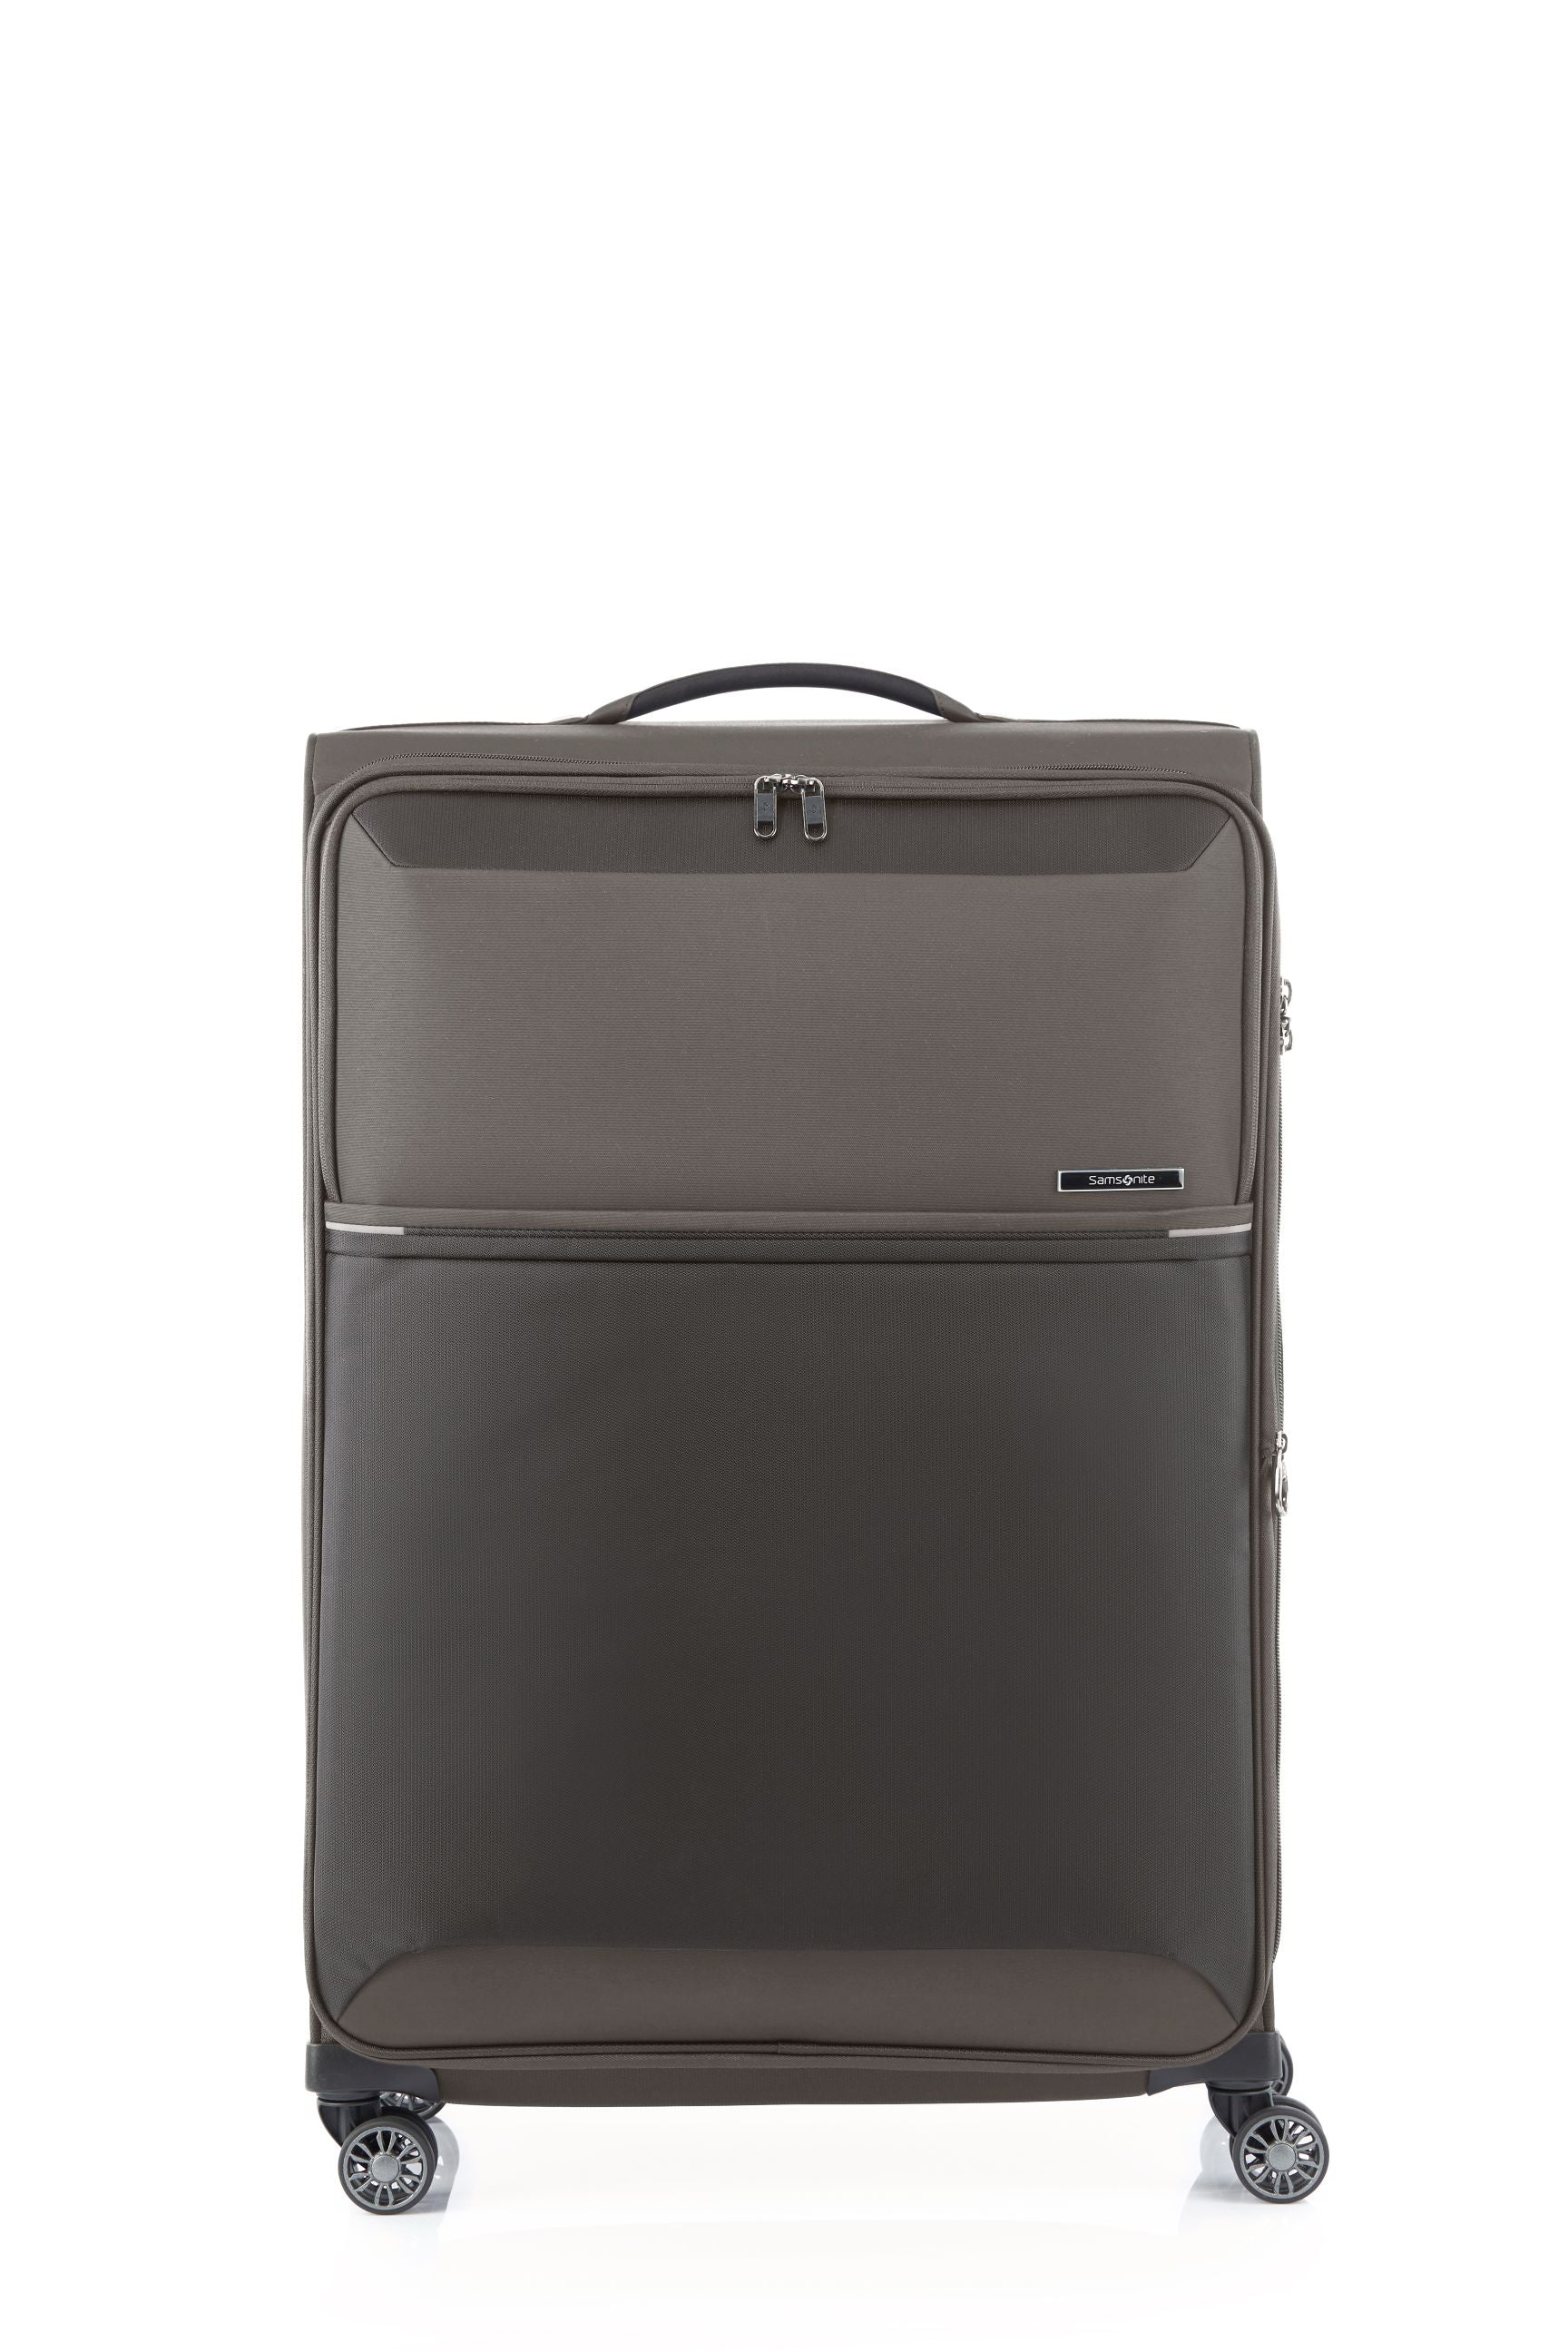 Samsonite 73HR 78cm Large Suitcase - Platinum Grey - 0